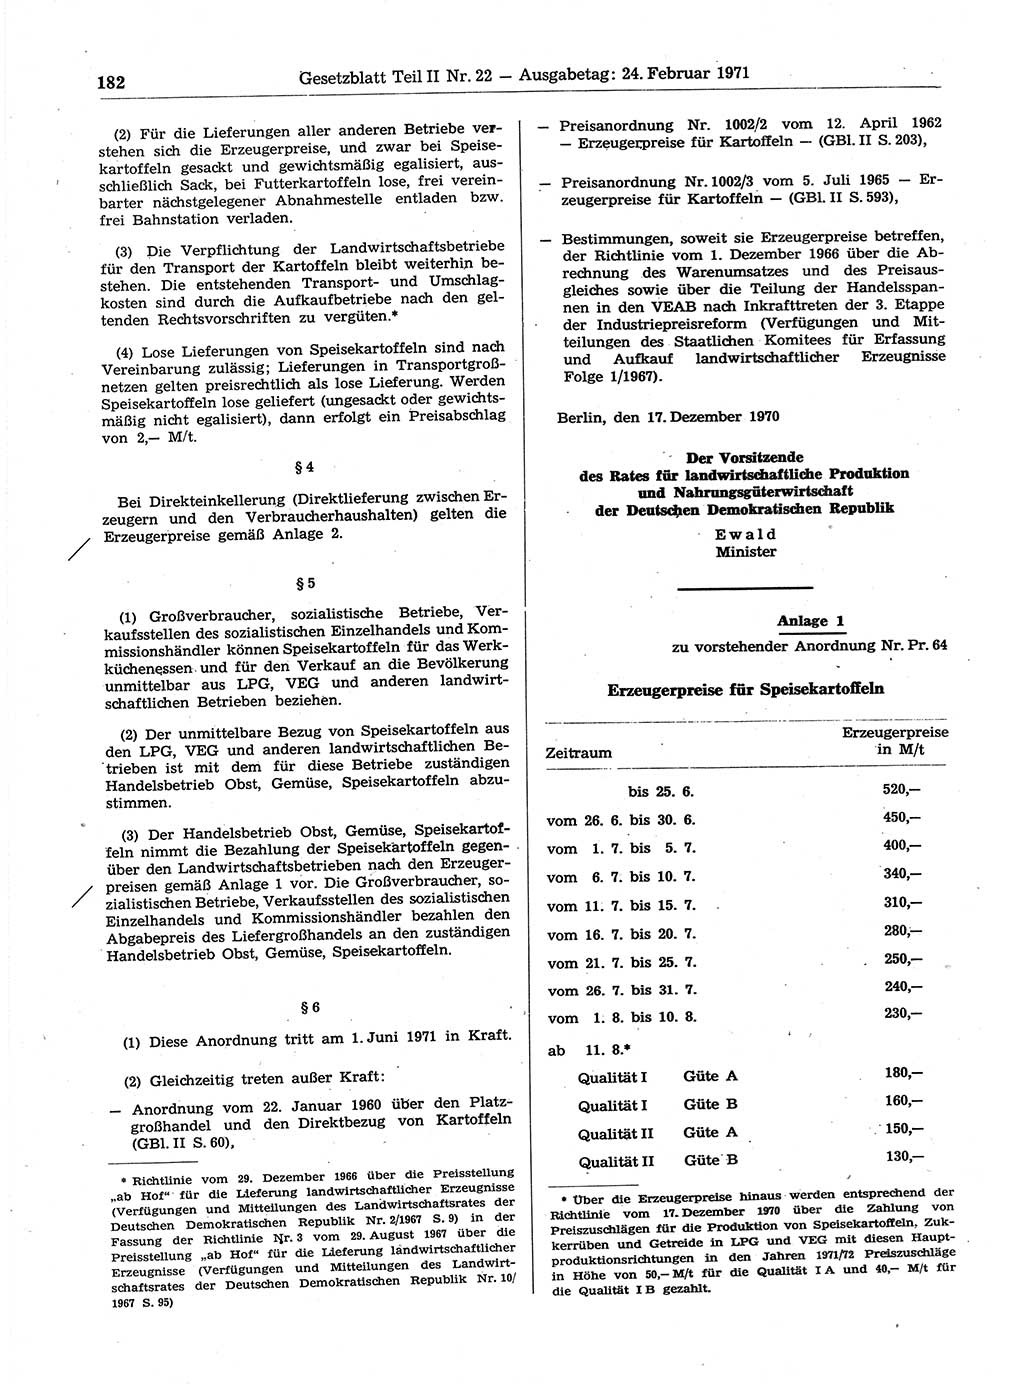 Gesetzblatt (GBl.) der Deutschen Demokratischen Republik (DDR) Teil ⅠⅠ 1971, Seite 182 (GBl. DDR ⅠⅠ 1971, S. 182)